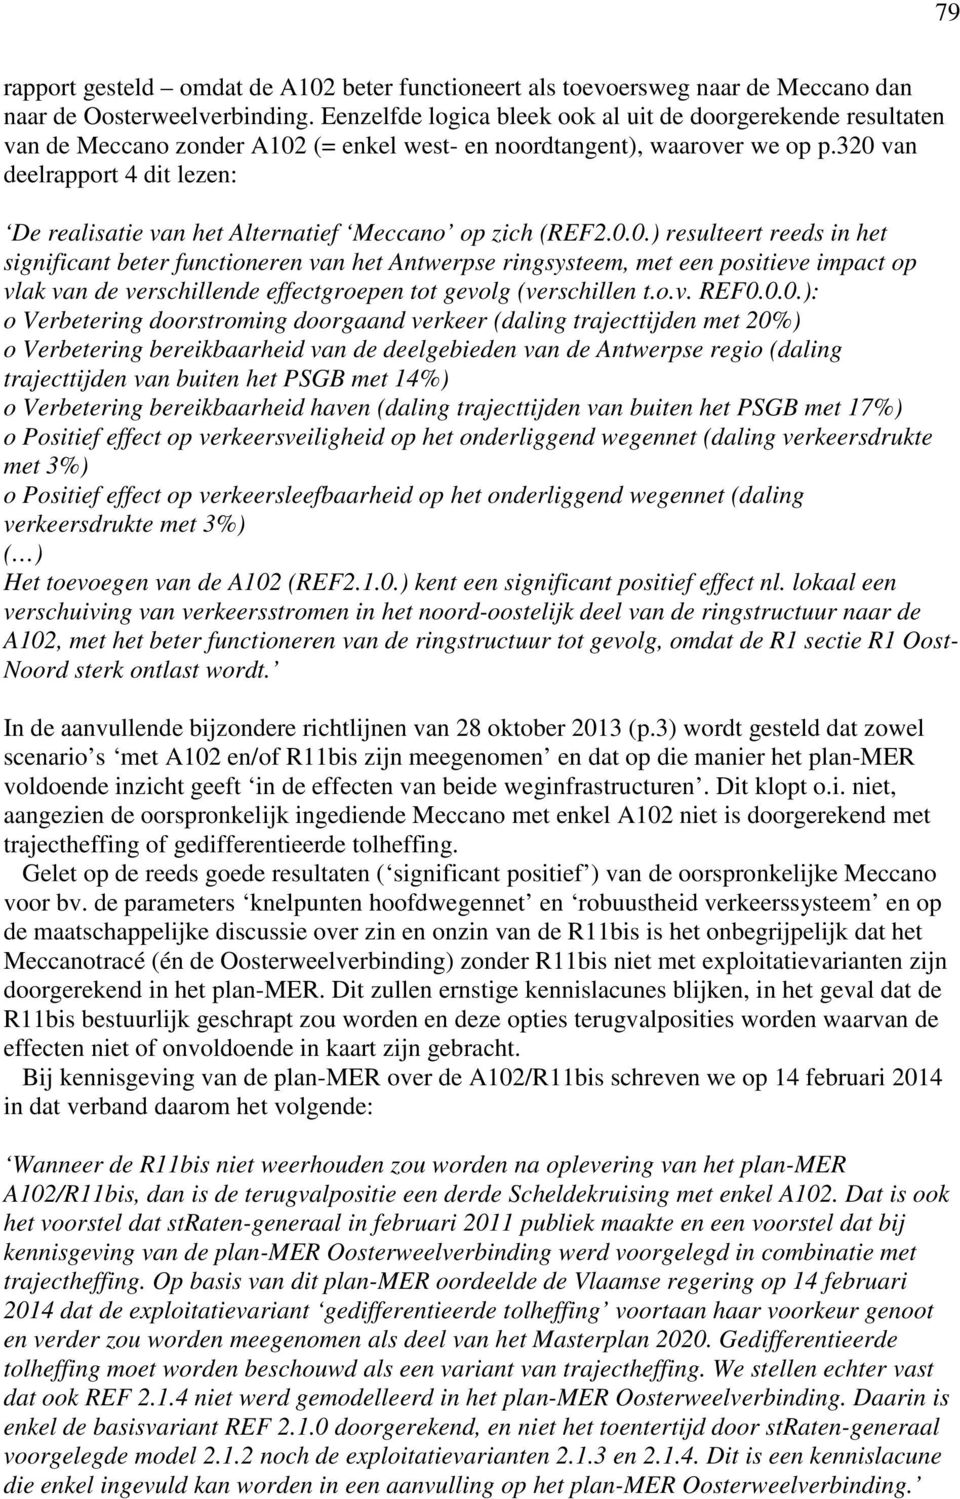 320 van deelrapport 4 dit lezen: De realisatie van het Alternatief Meccano op zich (REF2.0.0.) resulteert reeds in het significant beter functioneren van het Antwerpse ringsysteem, met een positieve impact op vlak van de verschillende effectgroepen tot gevolg (verschillen t.